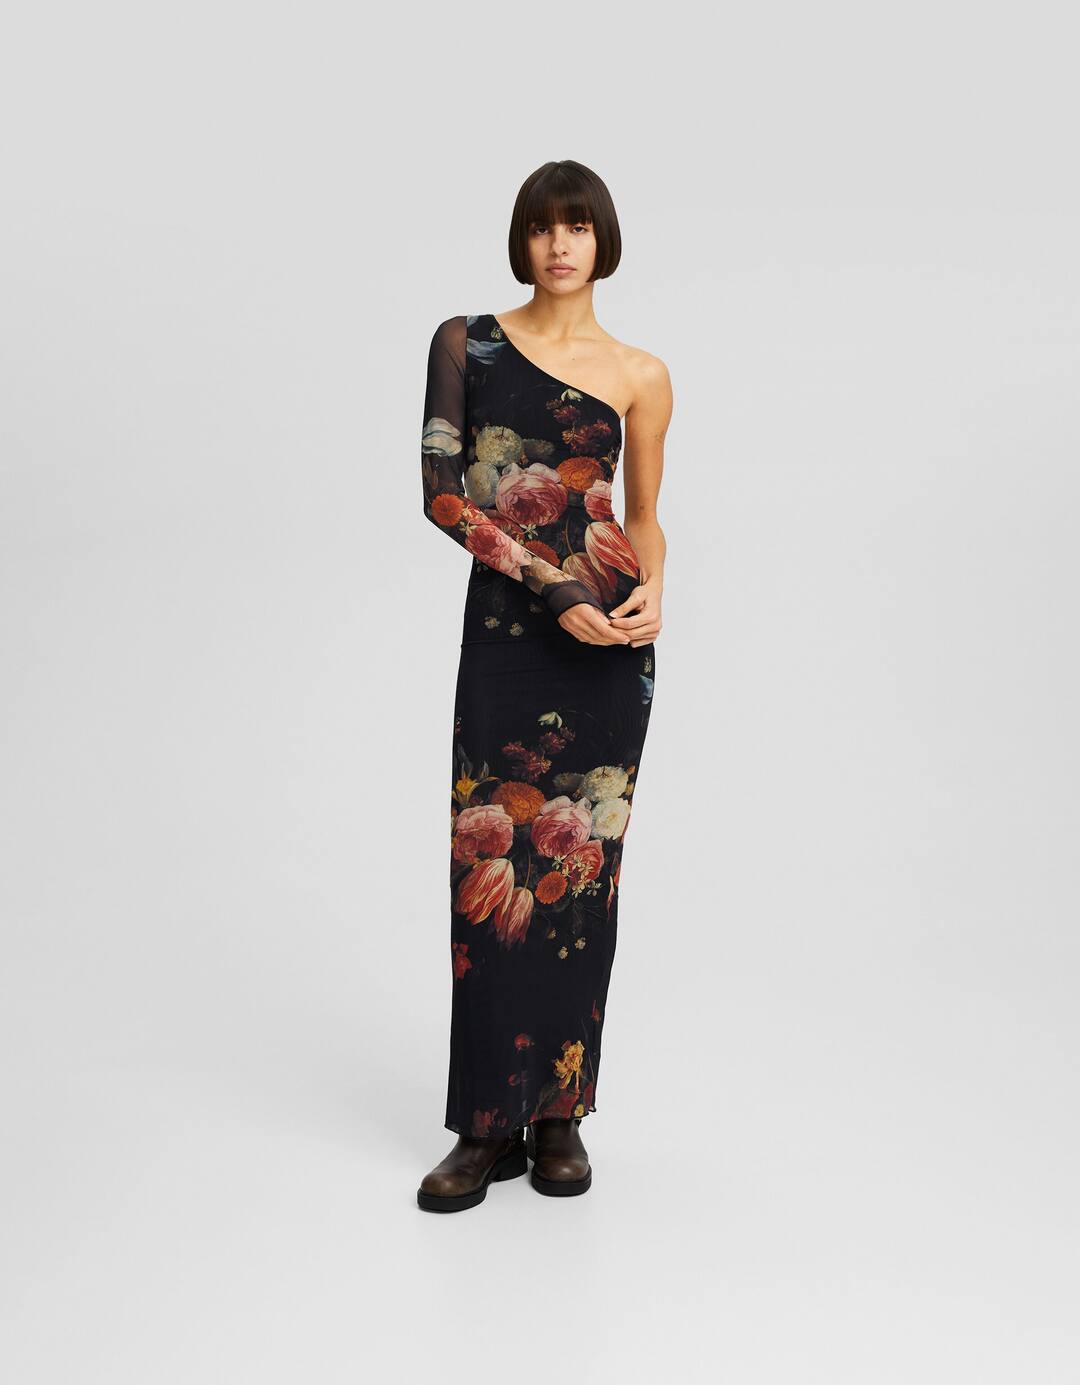 Long asymmetric tulle dress with Jan van Kessel print and long sleeves